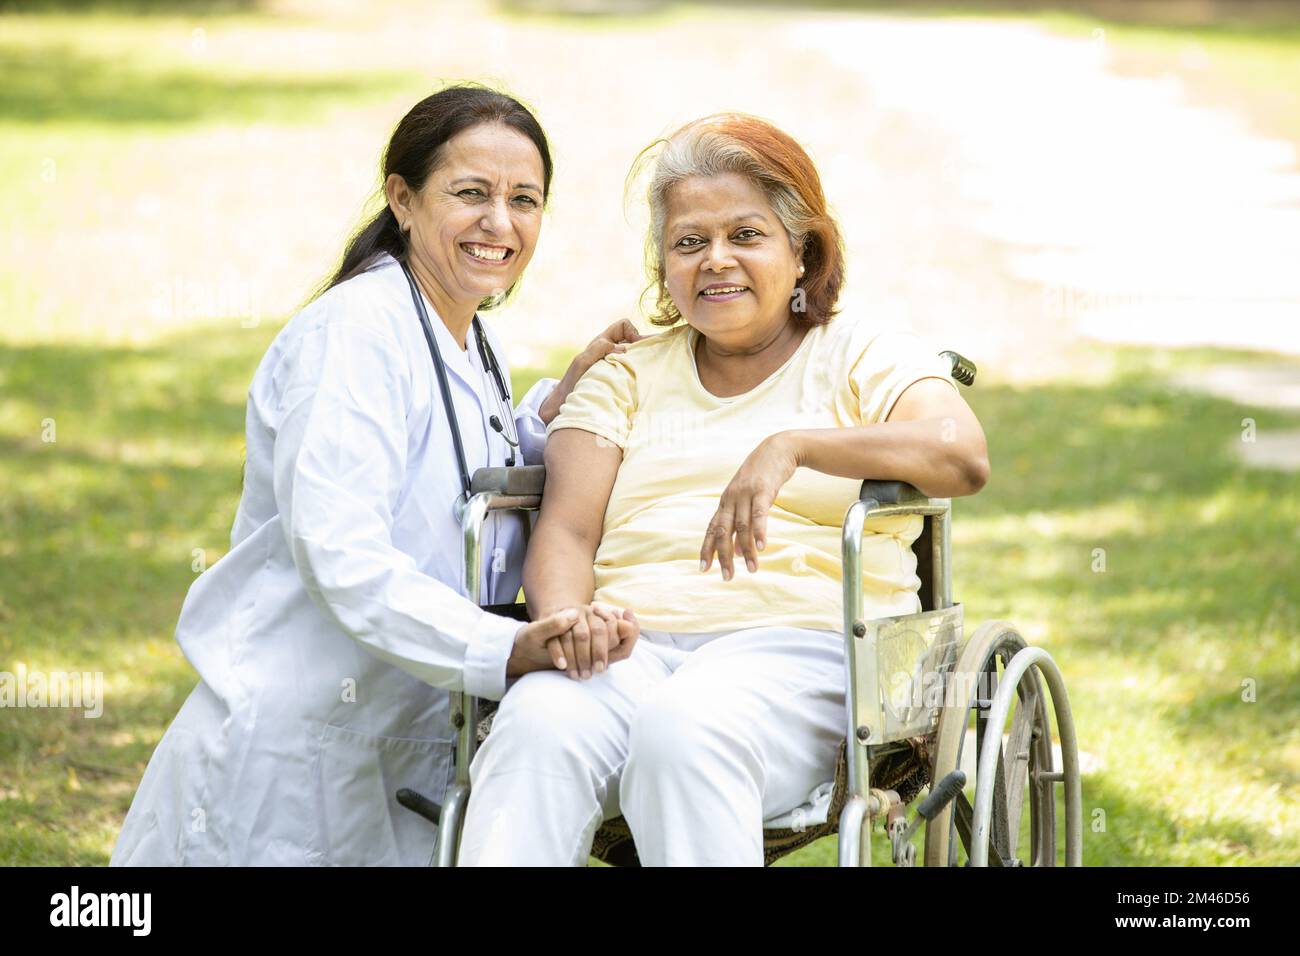 Ritratto di infermiera indiana caregiver con anziana paziente in sedia a rotelle all'aperto al parco, medico asiatico aiutare e sostenere anziani anziani anziani di età superiore Foto Stock